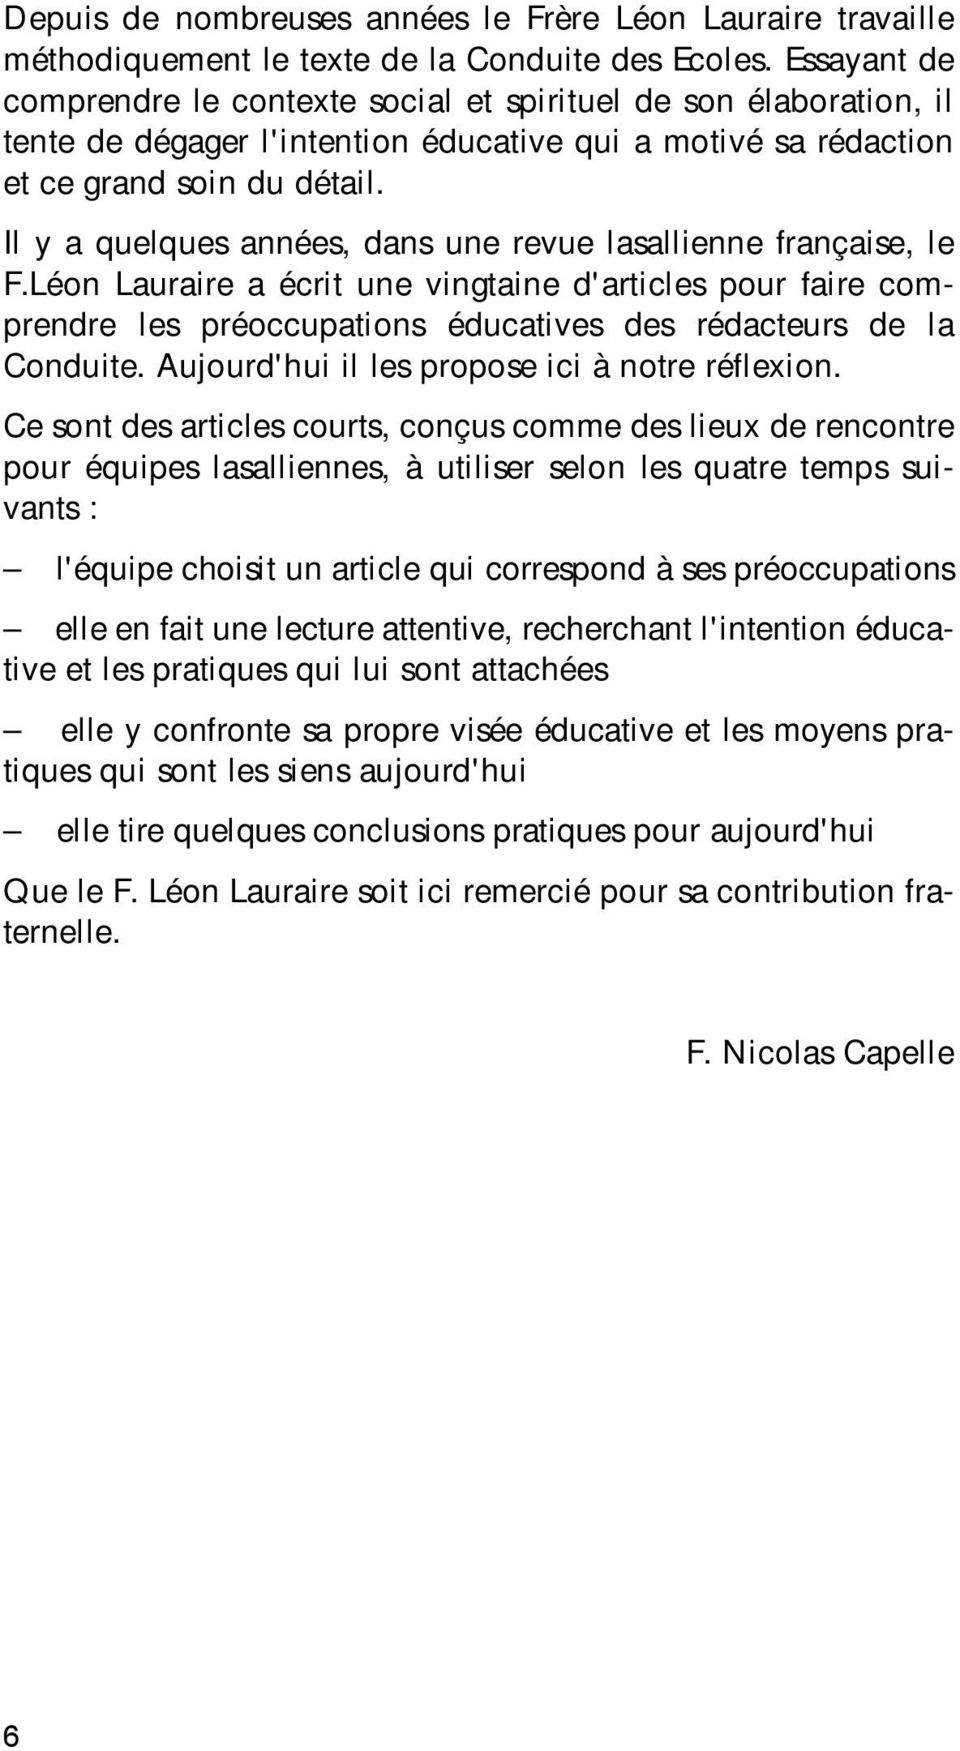 Il y a quelques années, dans une revue lasallienne française, le F.Léon Lauraire a écrit une vingtaine d'articles pour faire comprendre les préoccupations éducatives des rédacteurs de la Conduite.